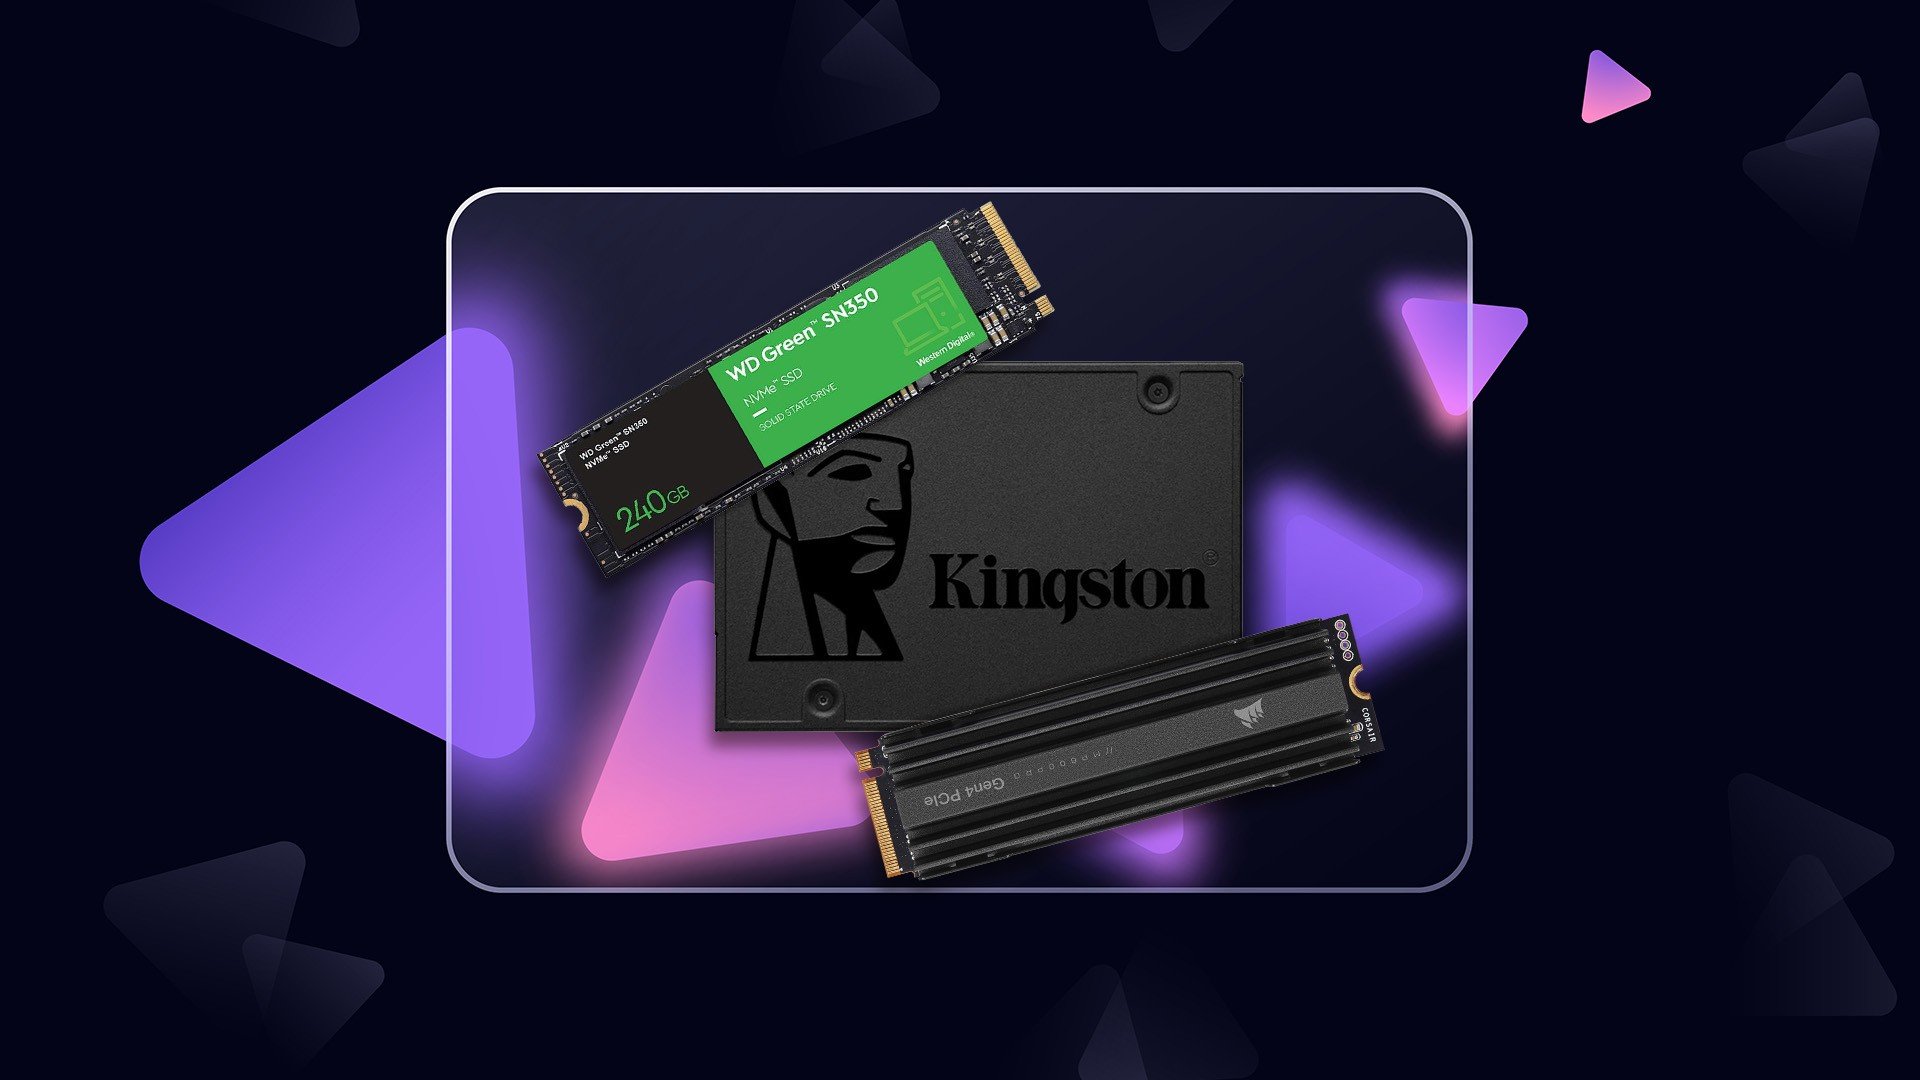 SSD SATA ou M.2: qual é o mais indicado para jogar?